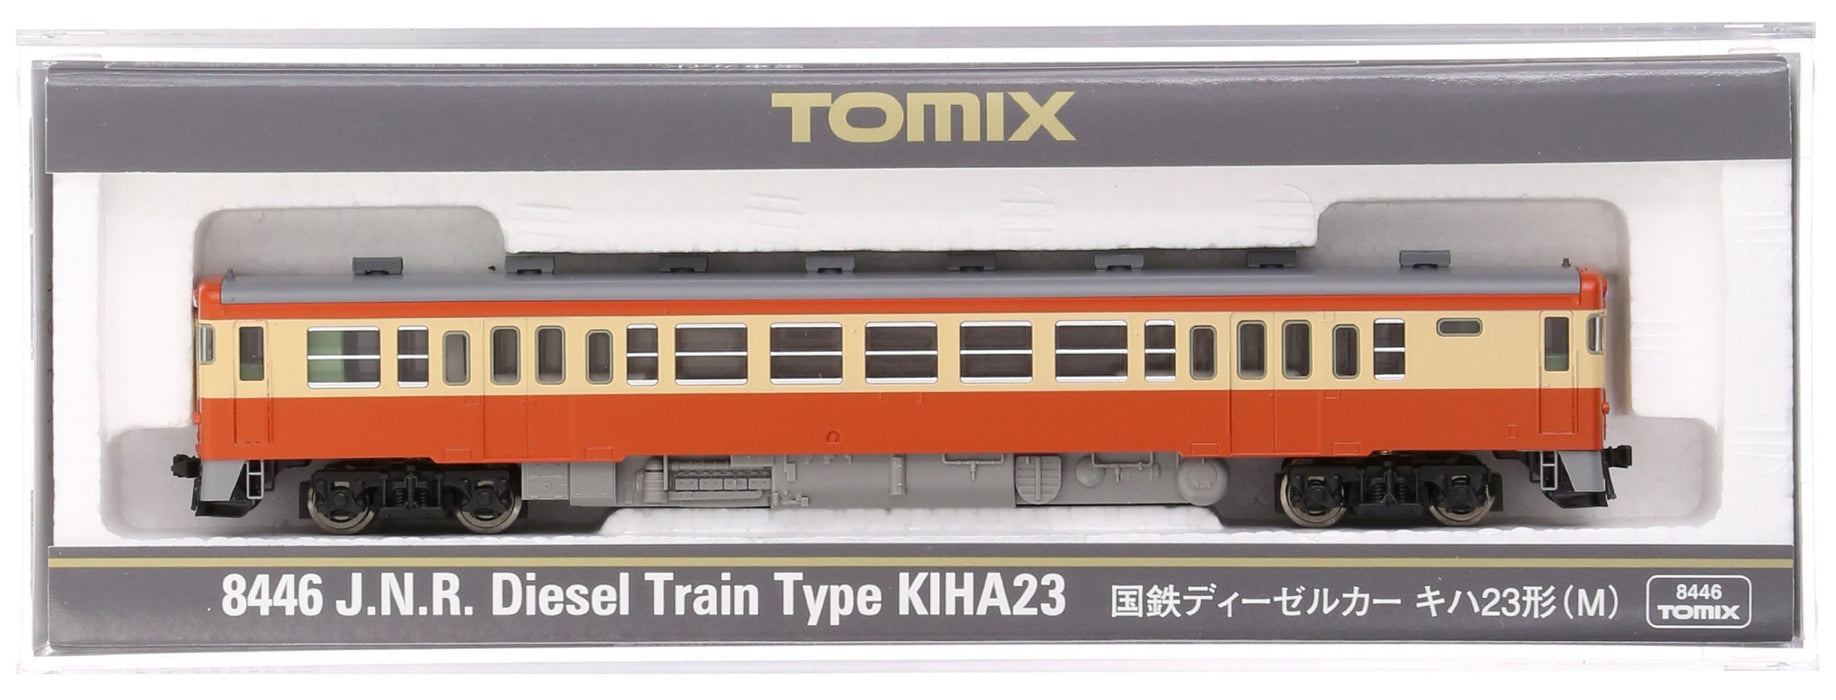 Tomytec Tomix N Gauge Kiha23 M 8446 Diesel Railway Model Car